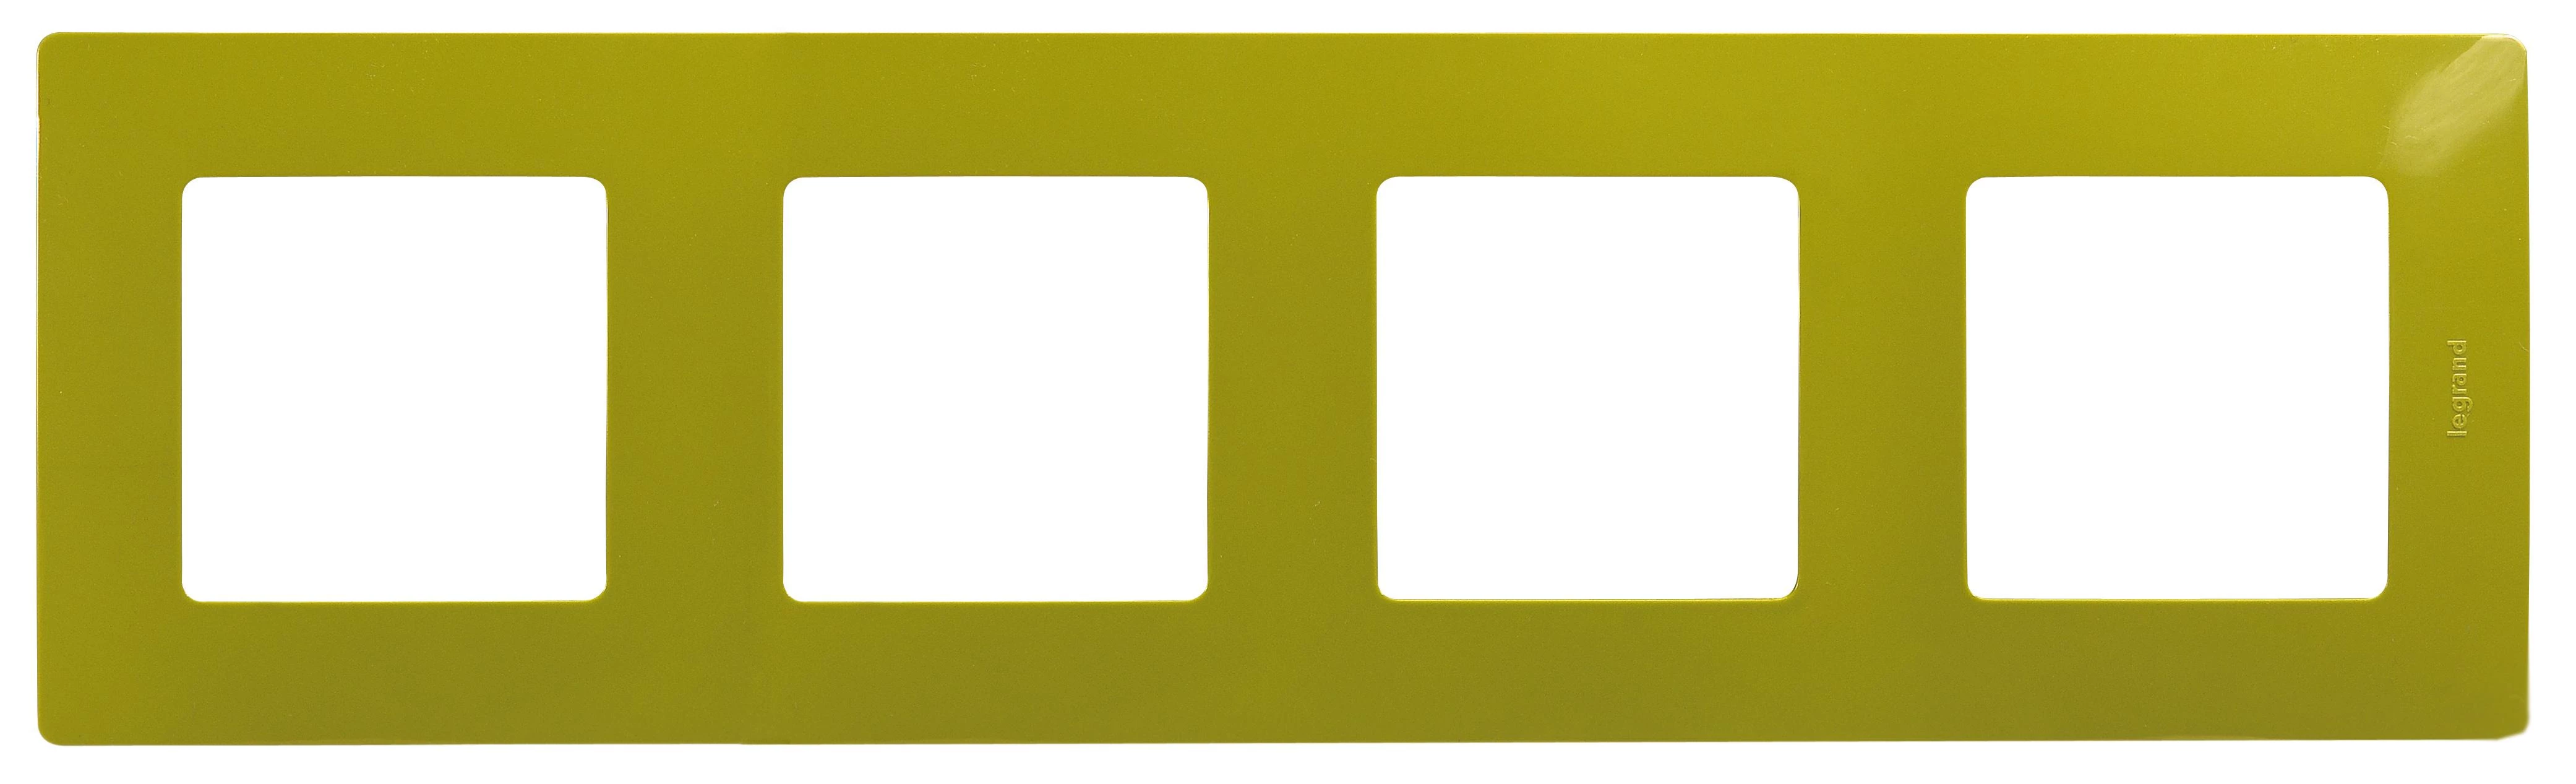  артикул 672544 название Рамка 4-ая (четверная), цвет Зеленый папоротник, Etika